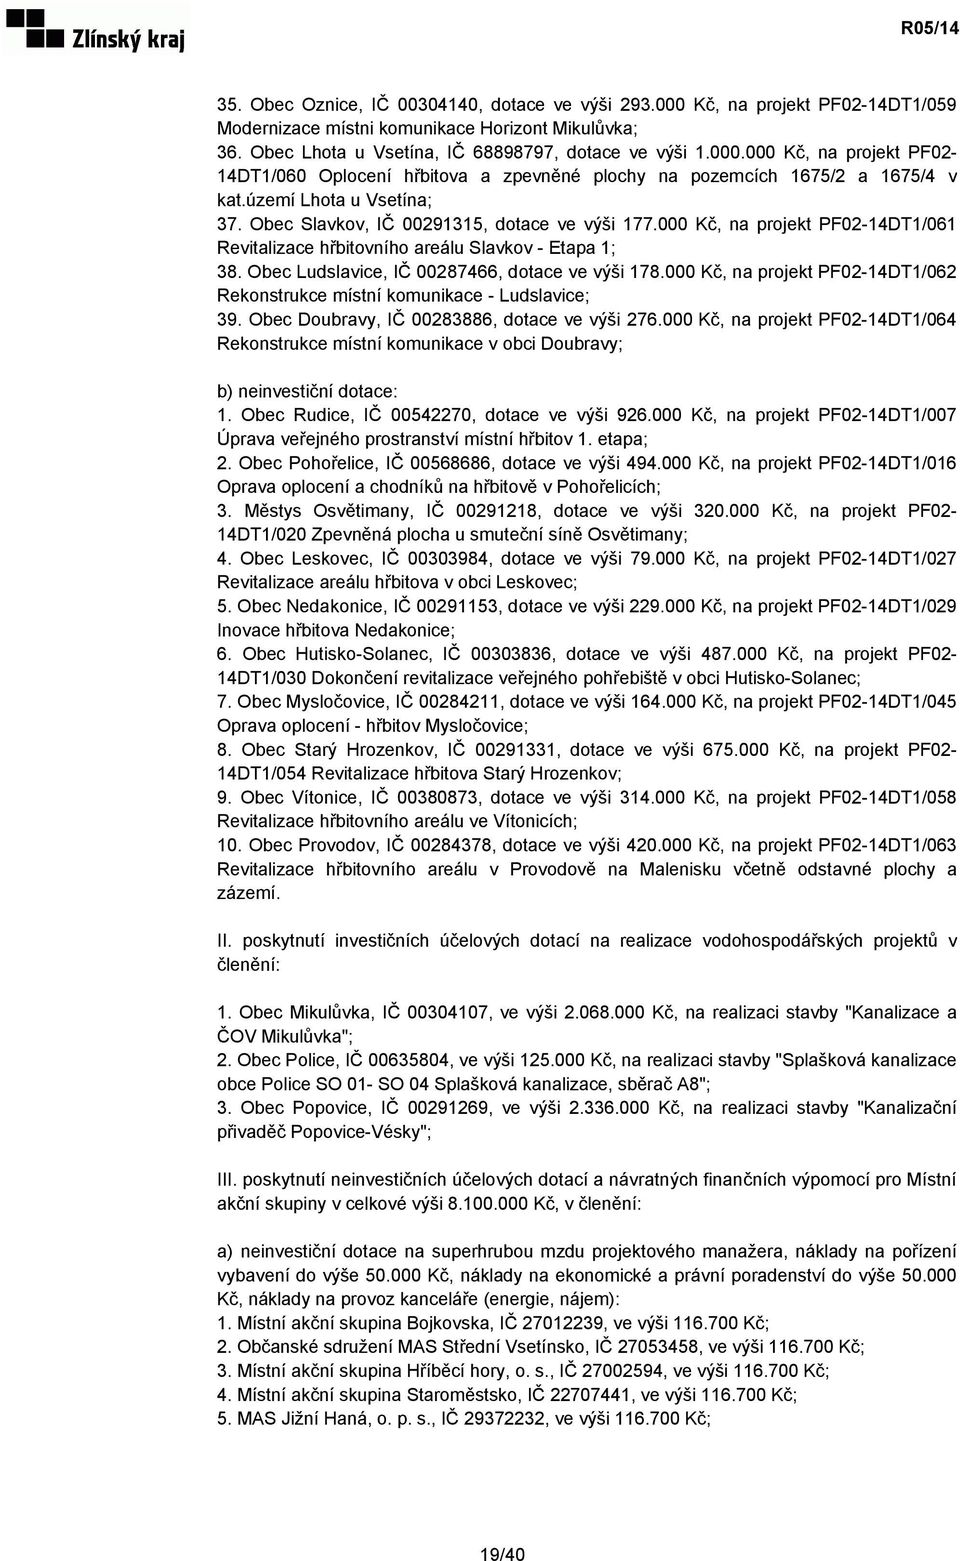 Obec Ludslavice, IČ 00287466, dotace ve výši 178.000 Kč, na projekt PF02-14DT1/062 Rekonstrukce místní komunikace - Ludslavice; 39. Obec Doubravy, IČ 00283886, dotace ve výši 276.